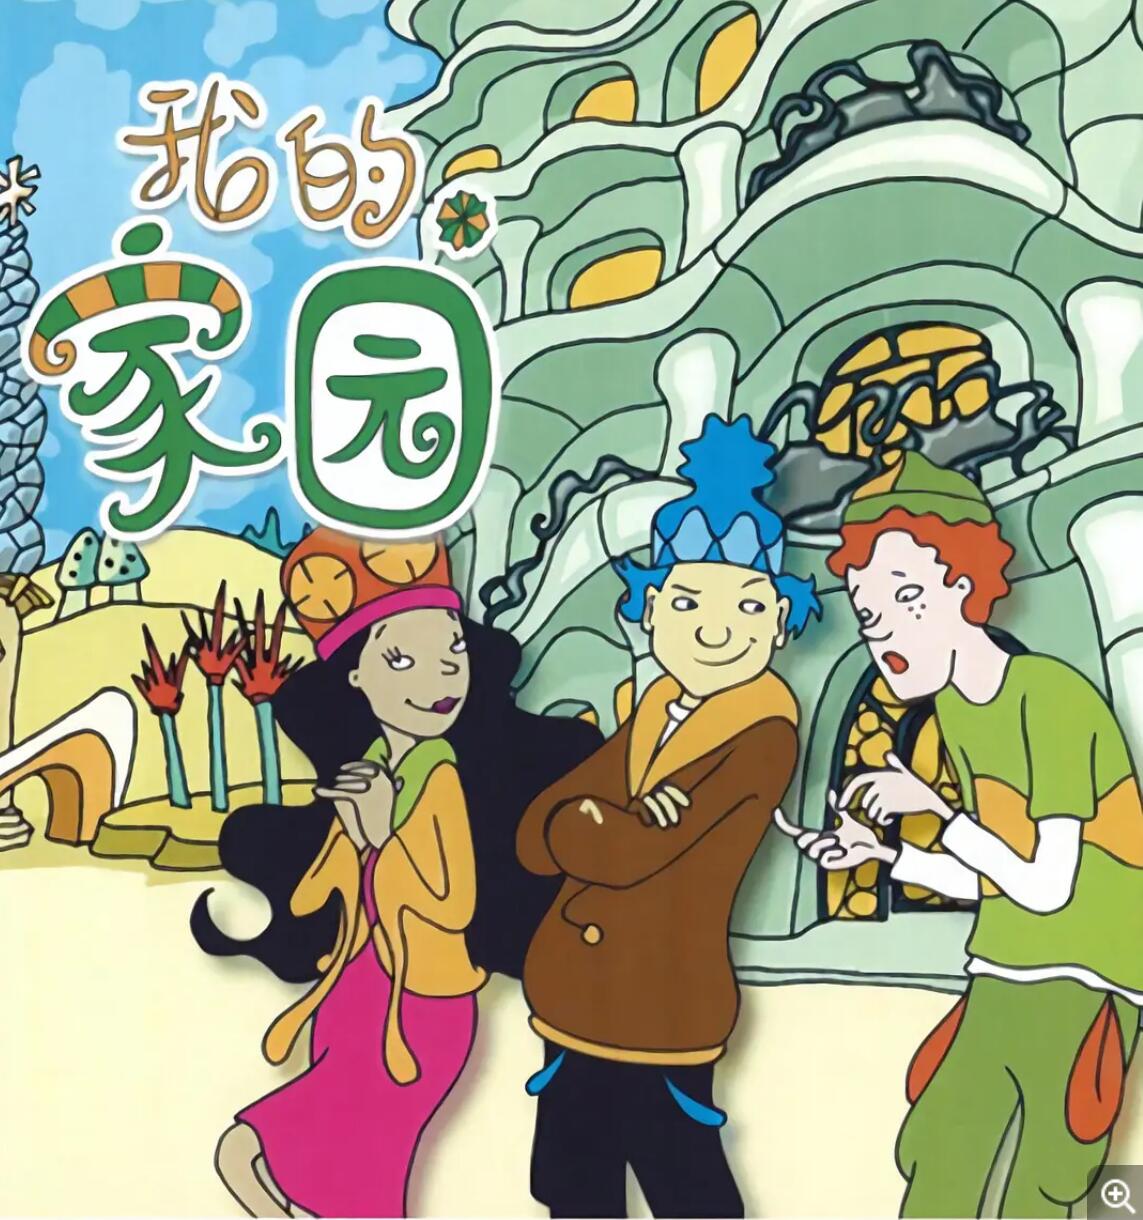 儿童搞笑益智动画片《七彩世界》全26集下载 mp4国语中字 适合2-5岁儿童